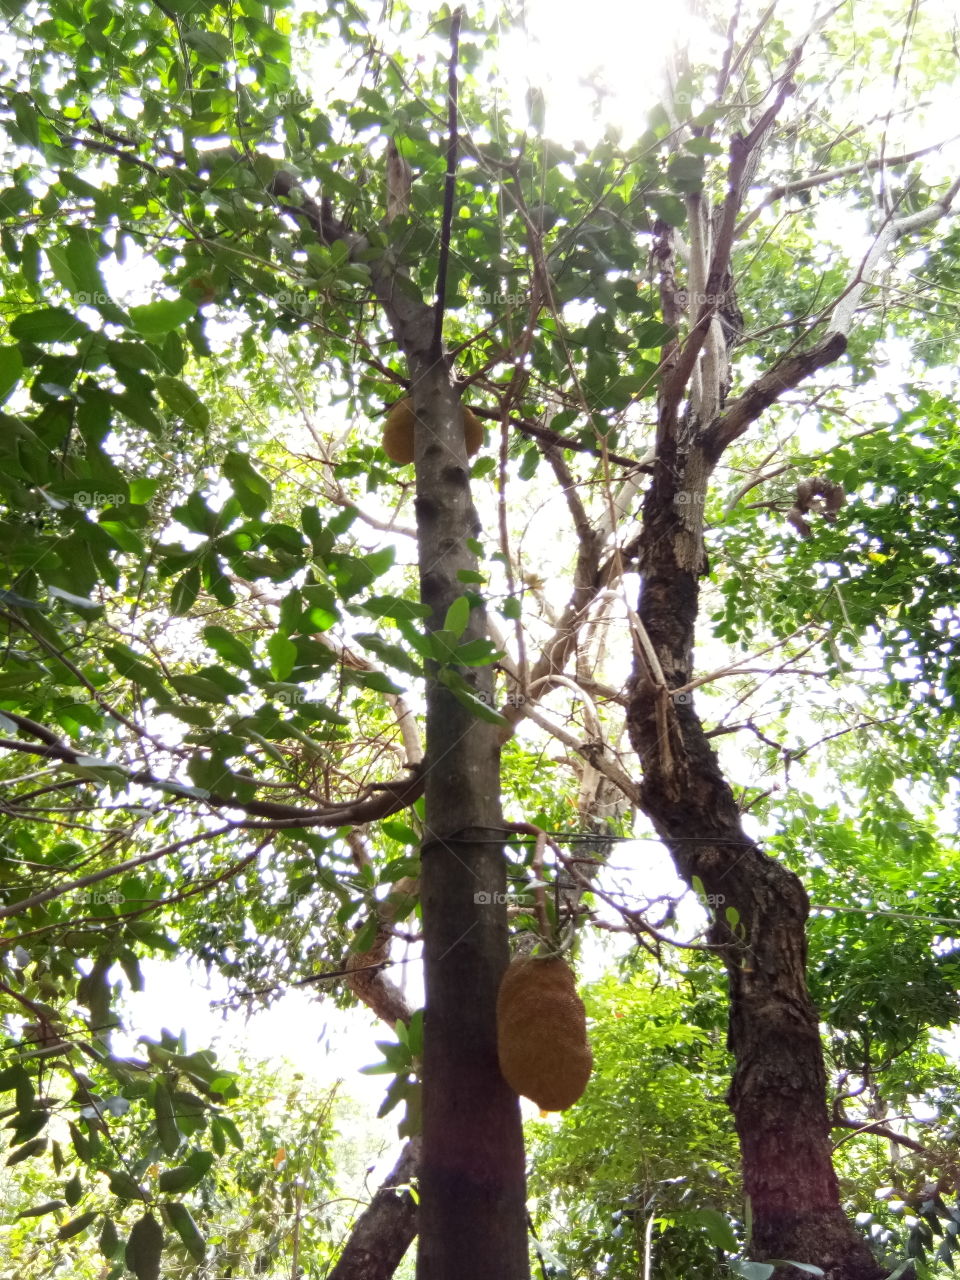 Jack fruit
fruit
tall
tree